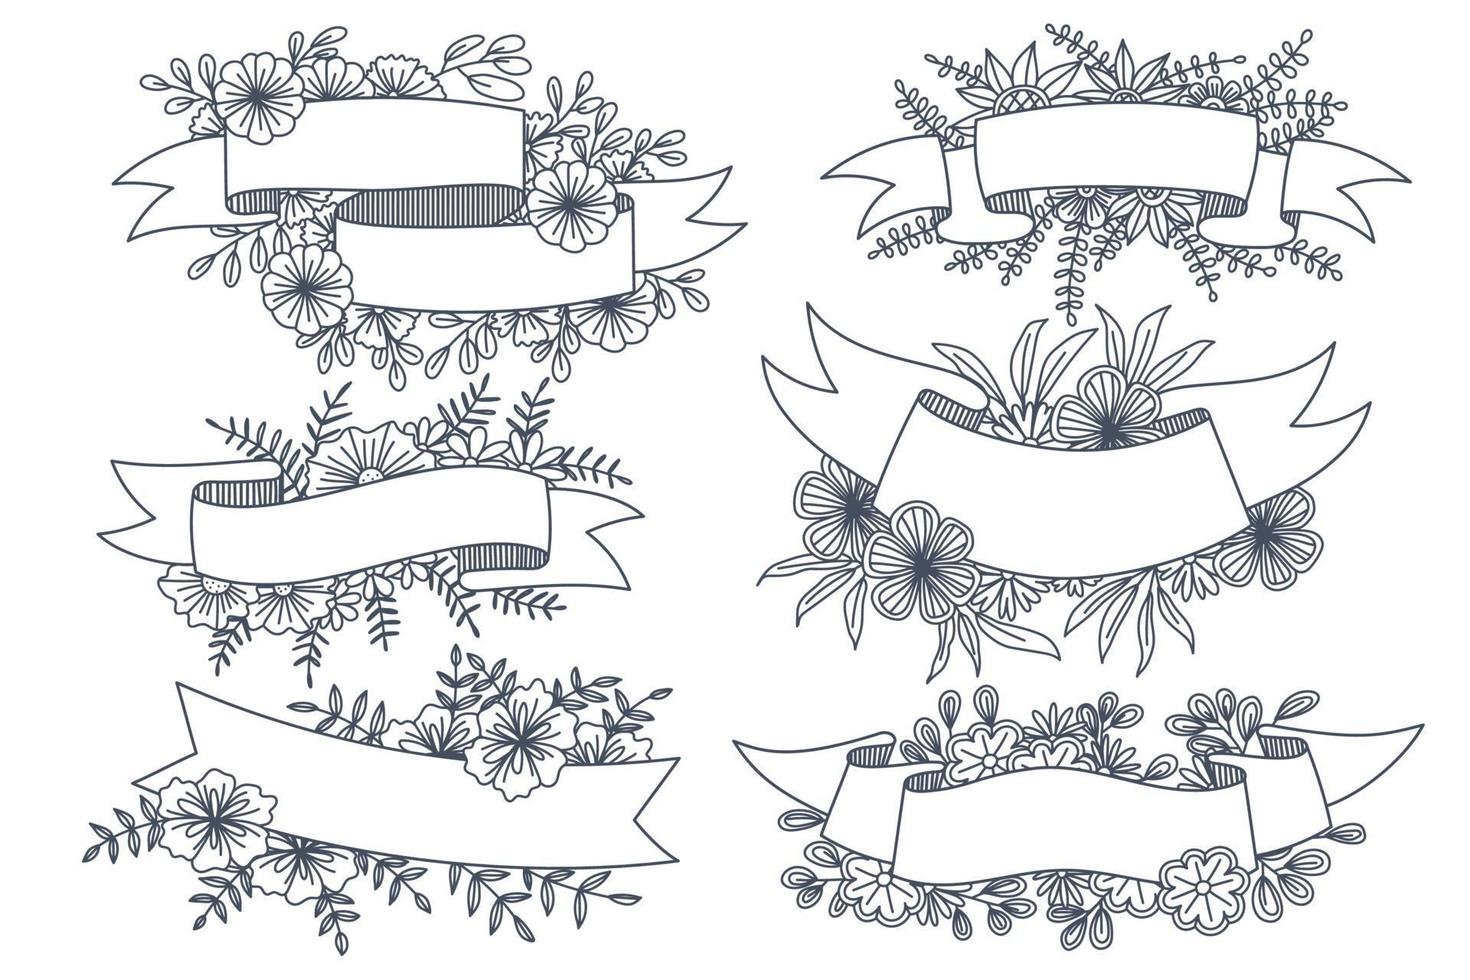 divers styles de cadres de fleurs sont conçus pour être utilisés dans les dessins animés et les illustrations vecteur